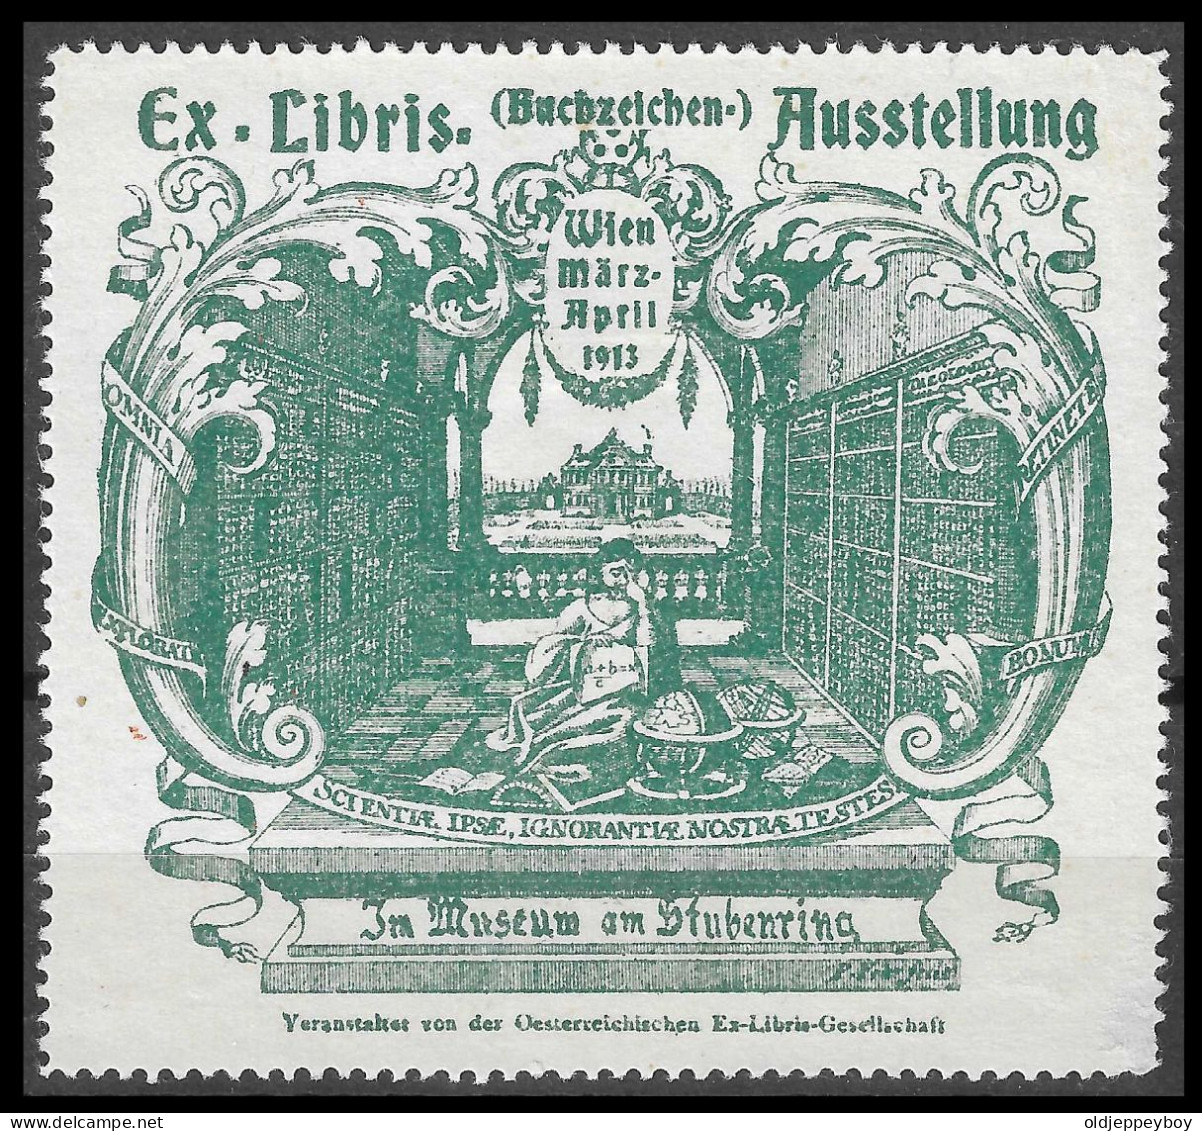 6 X 7 CM Vignette Buchzeichen-Ausstellung, Ex Libris, Wien, Im Museum Am Stubenring, 1913, In Der Bibliothek  GREEN - Erinnofilie